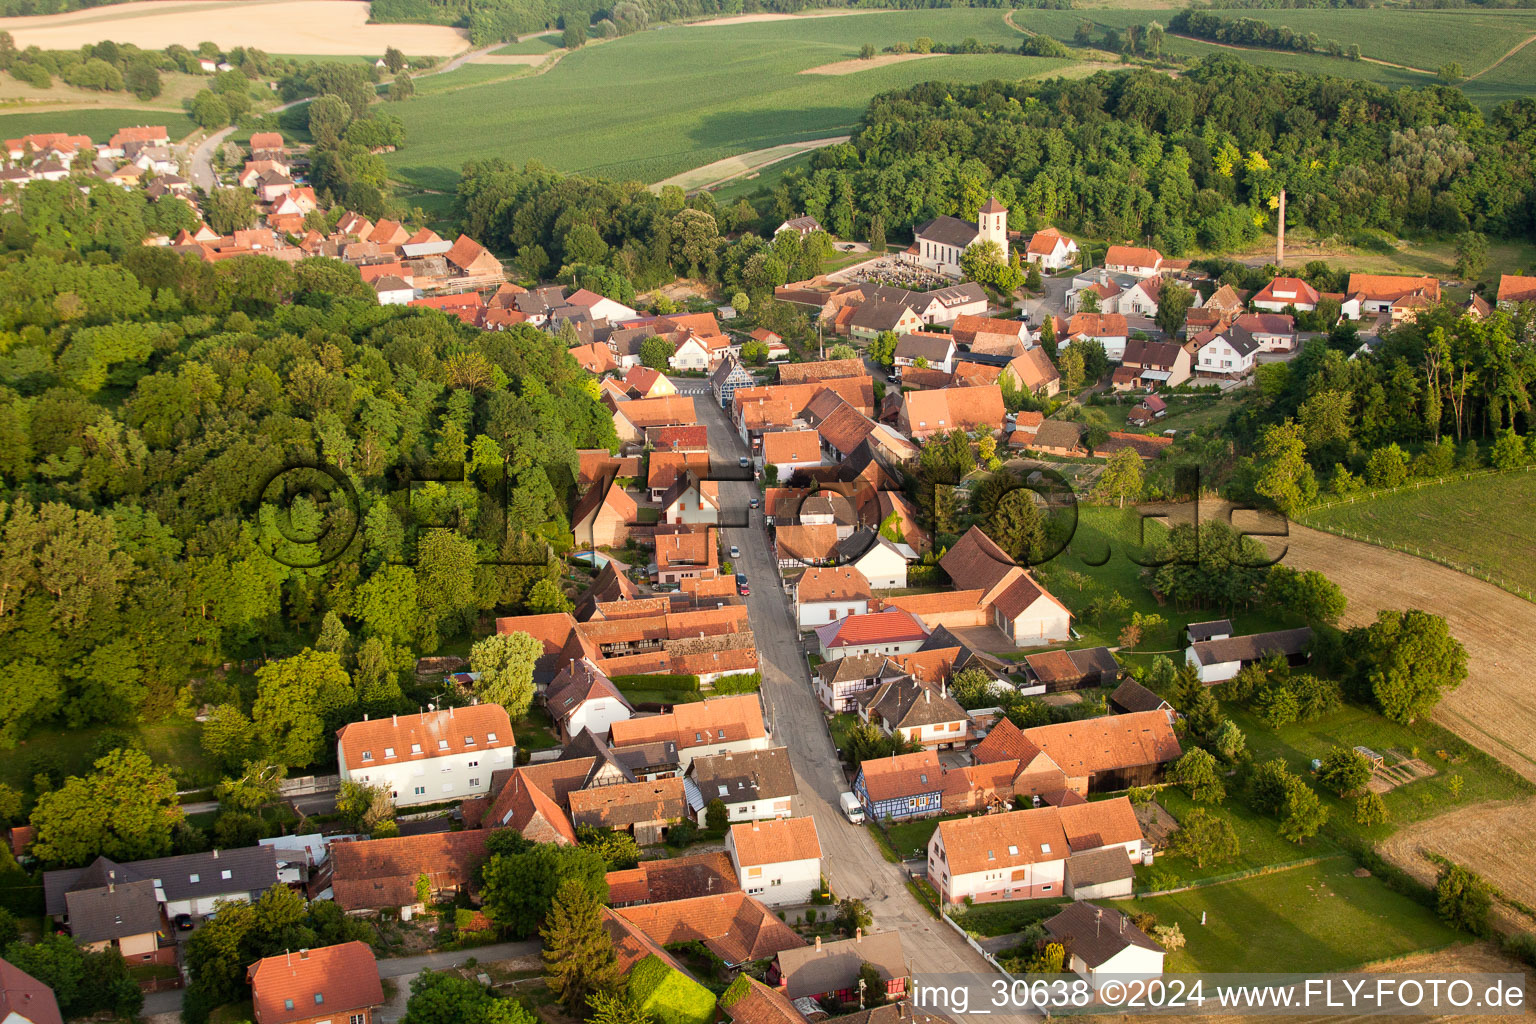 Neewiller-près-Lauterbourg dans le département Bas Rhin, France vue d'en haut